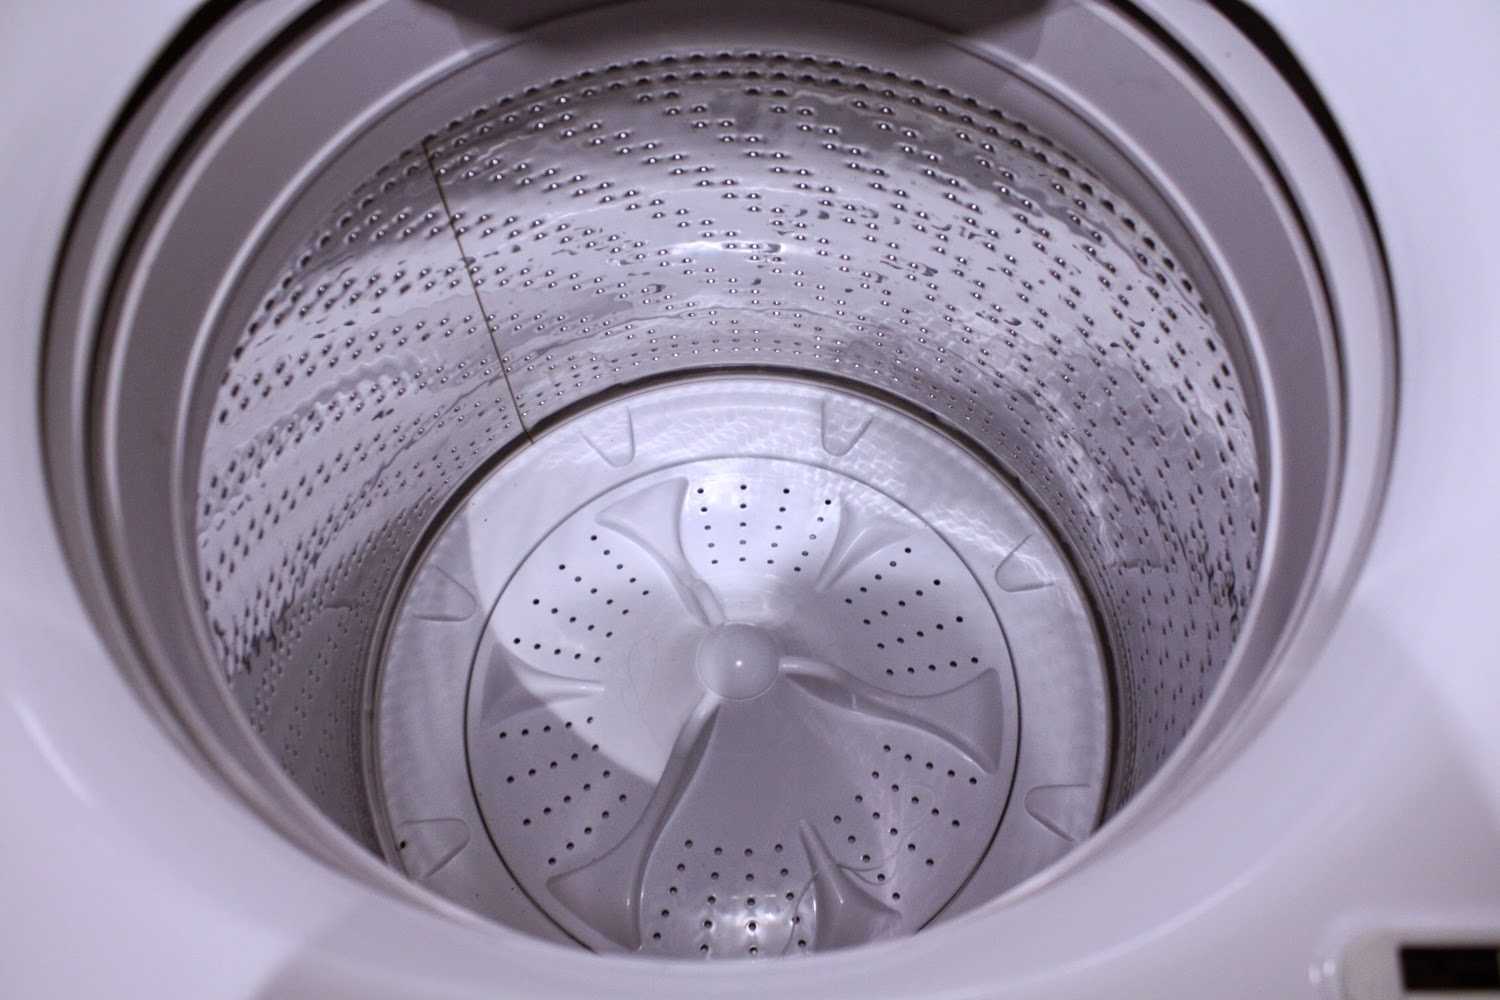 6 лучших активаторных стиральных машин - рейтинг 2021